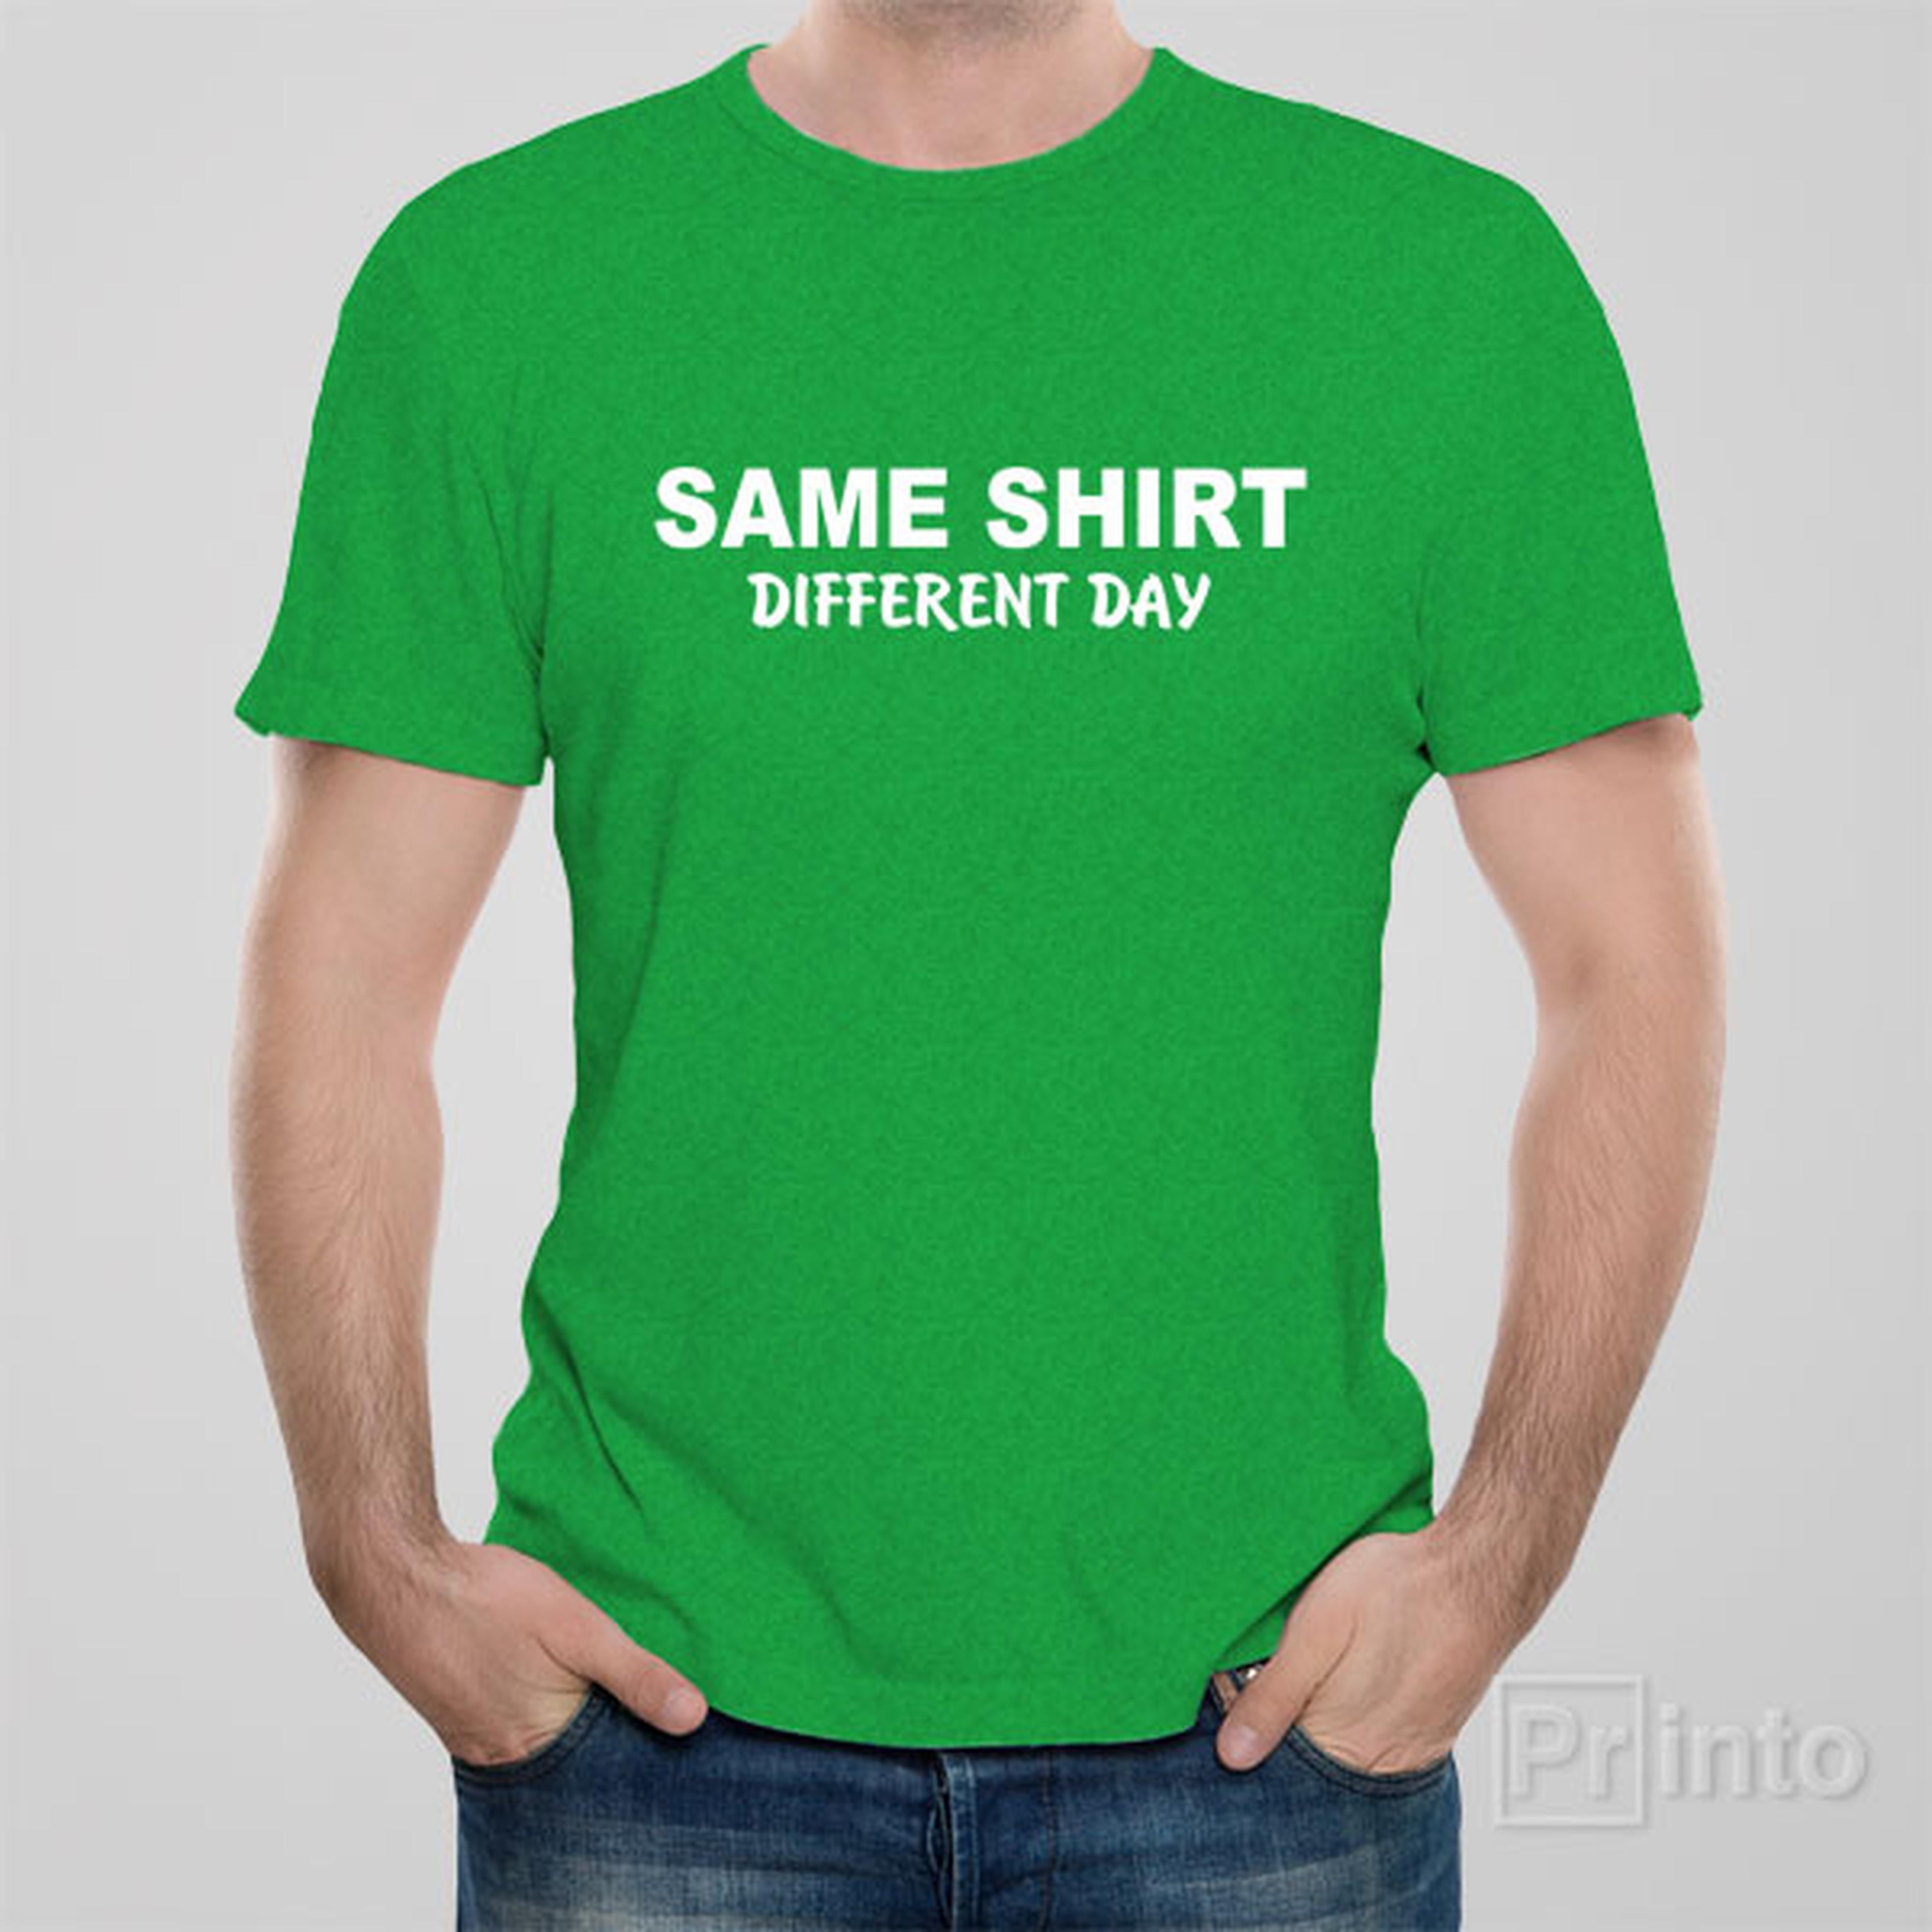 same-shirt-different-day-t-shirt